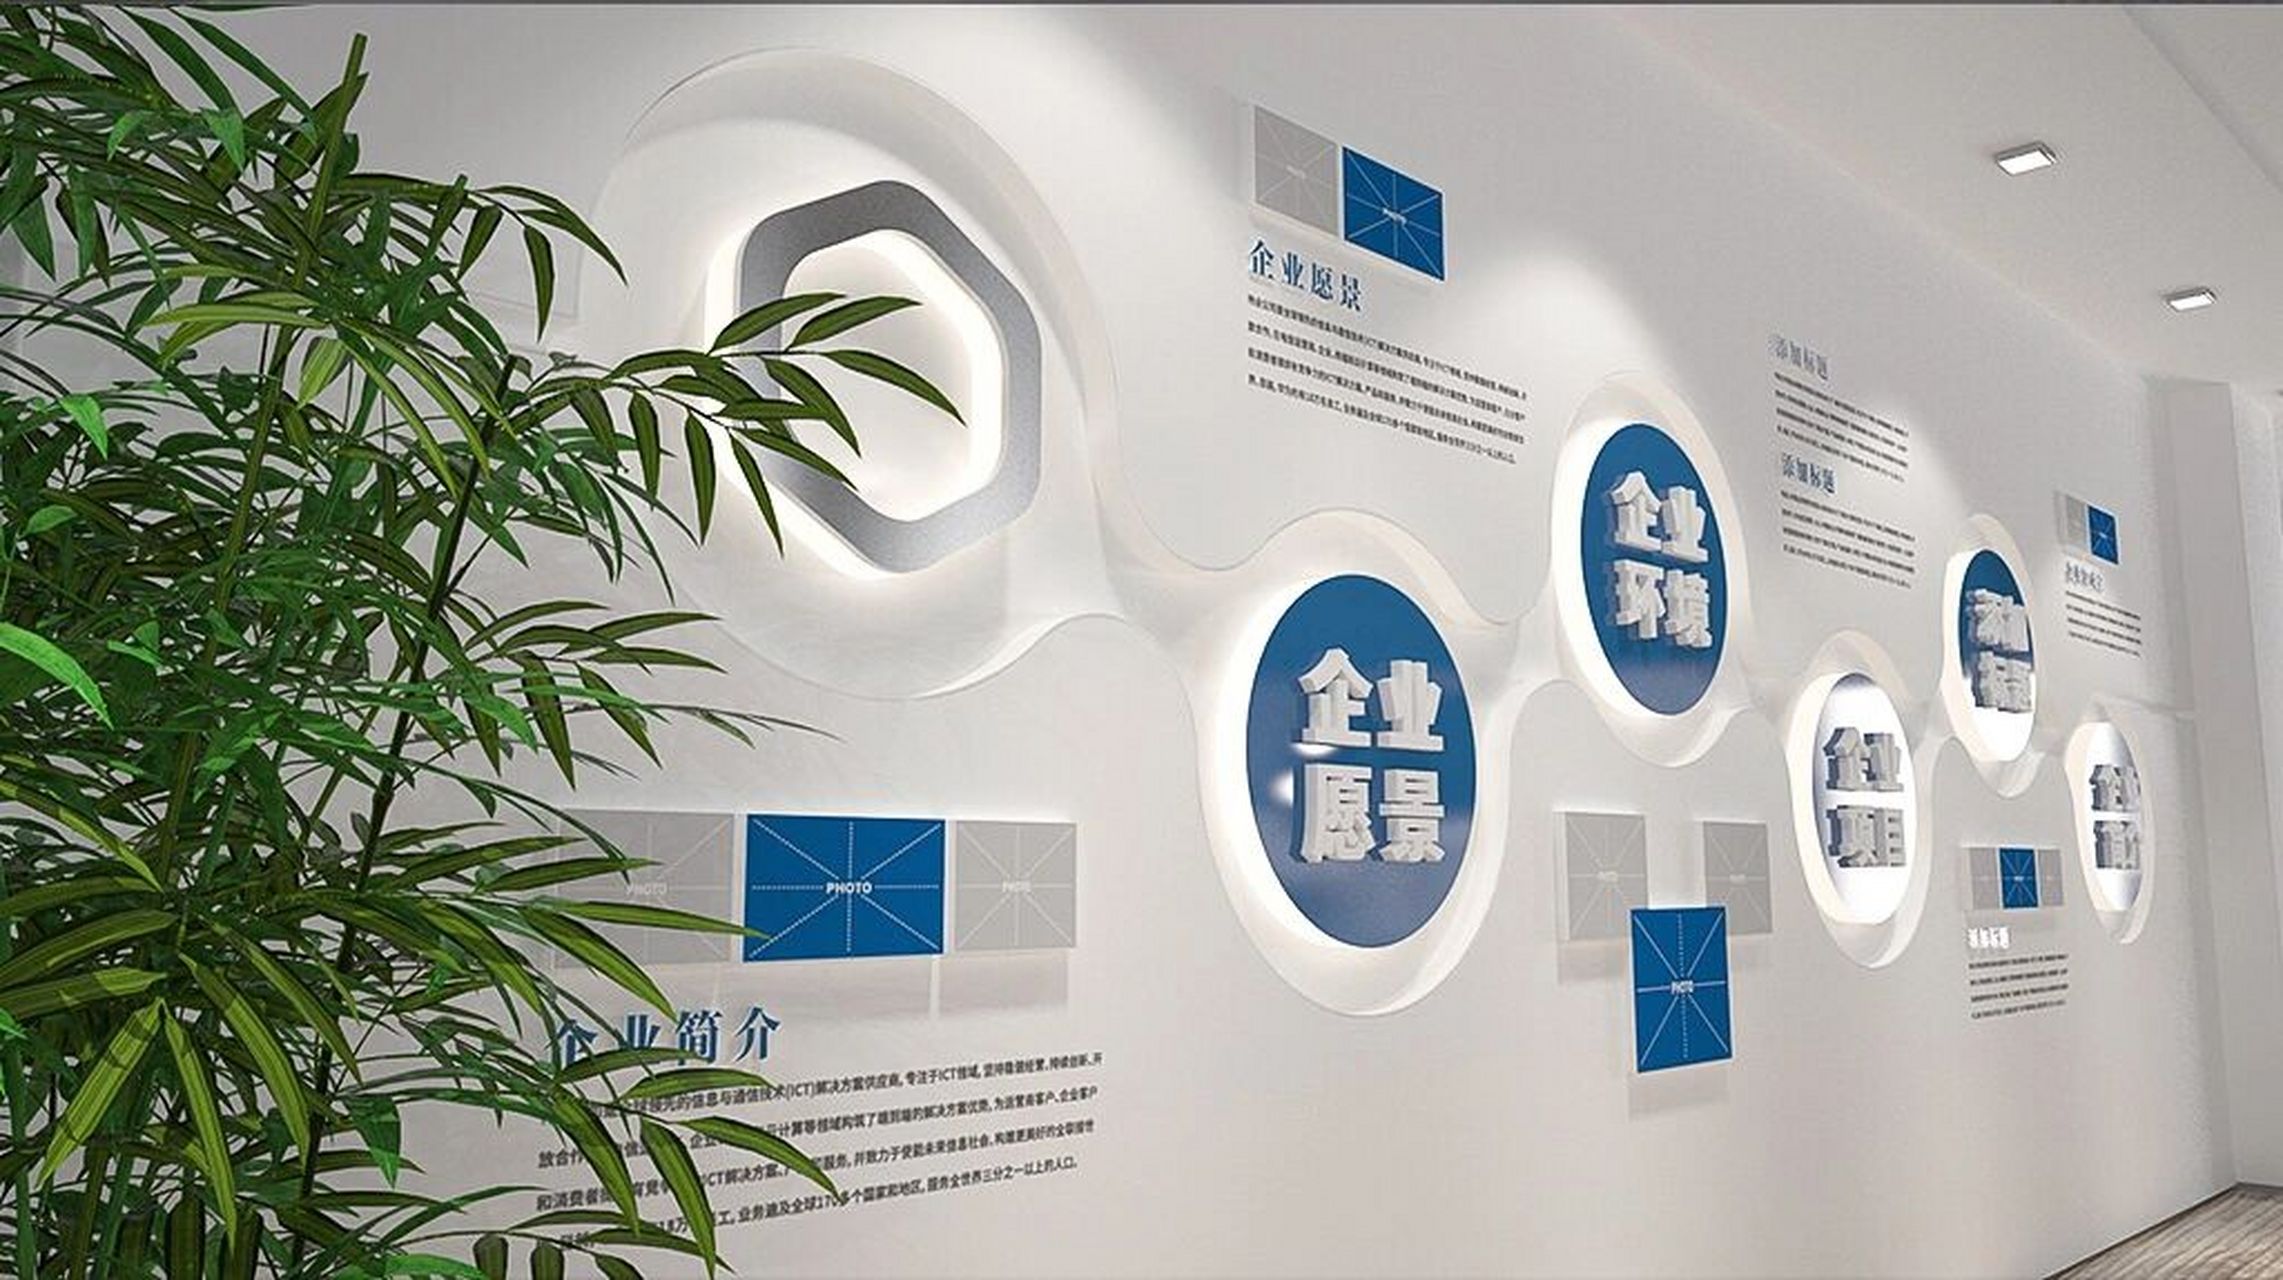 企业走廊文化墙——公司企业形象展示墙 浅蓝色搭配衬托出设计底纹